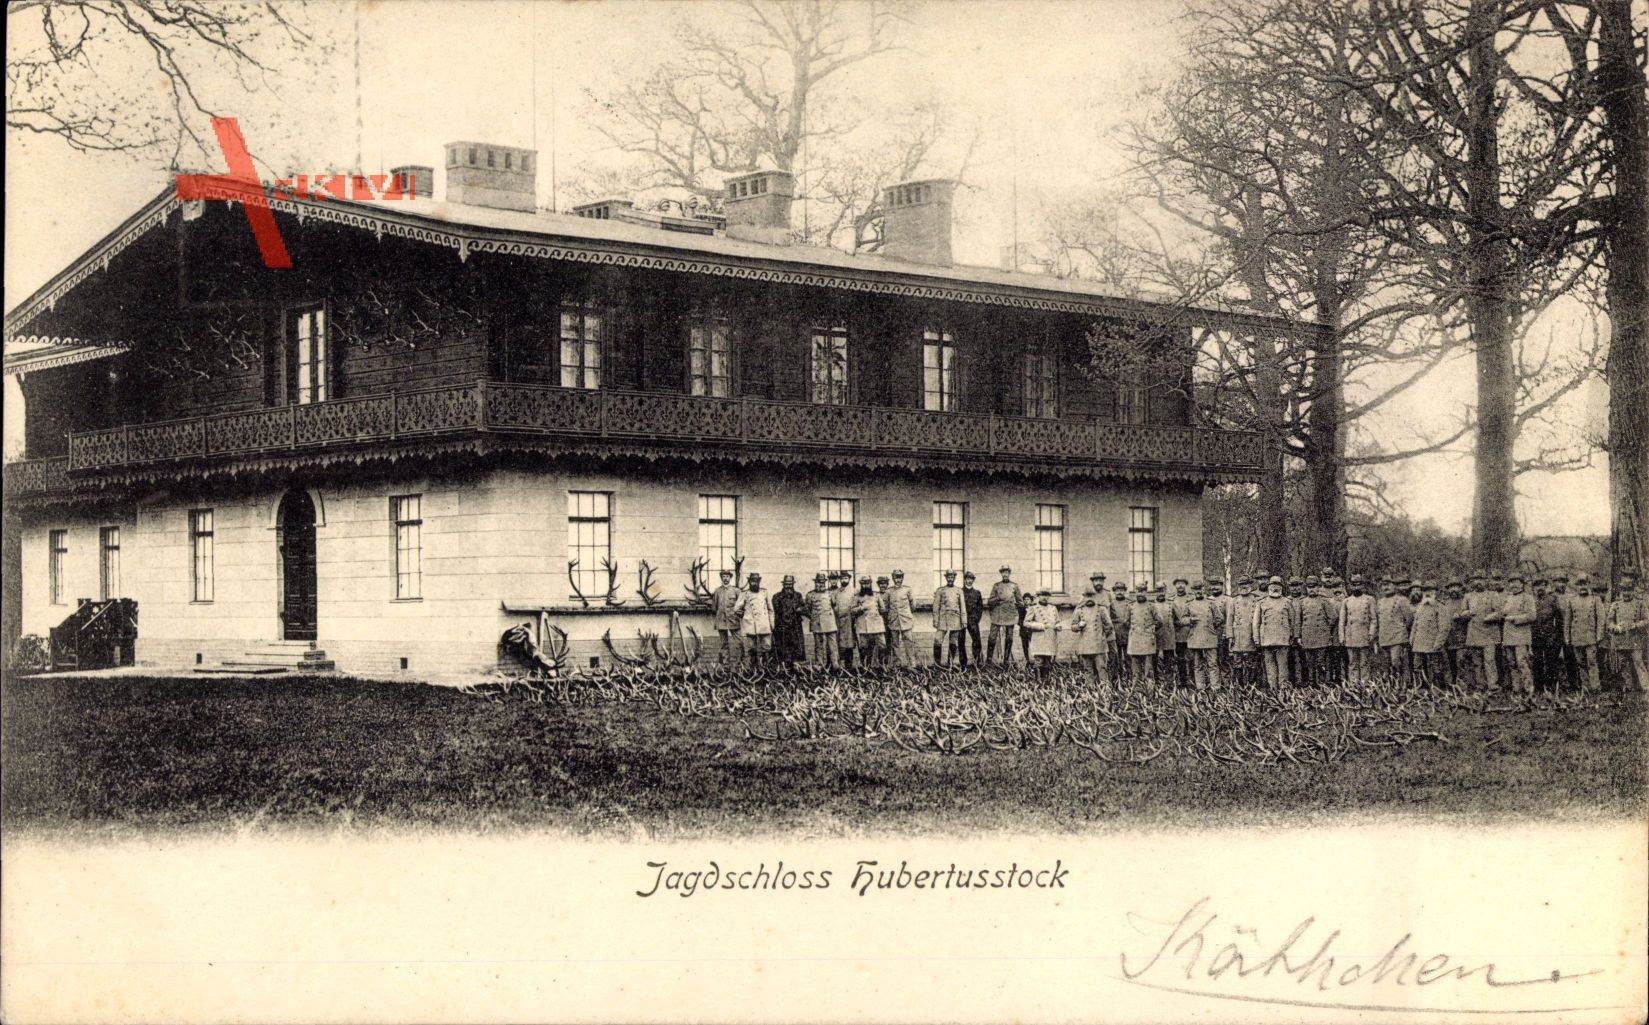 Joachimsthal, Blick auf das Jagdschloss Hubertusstock, Jäger